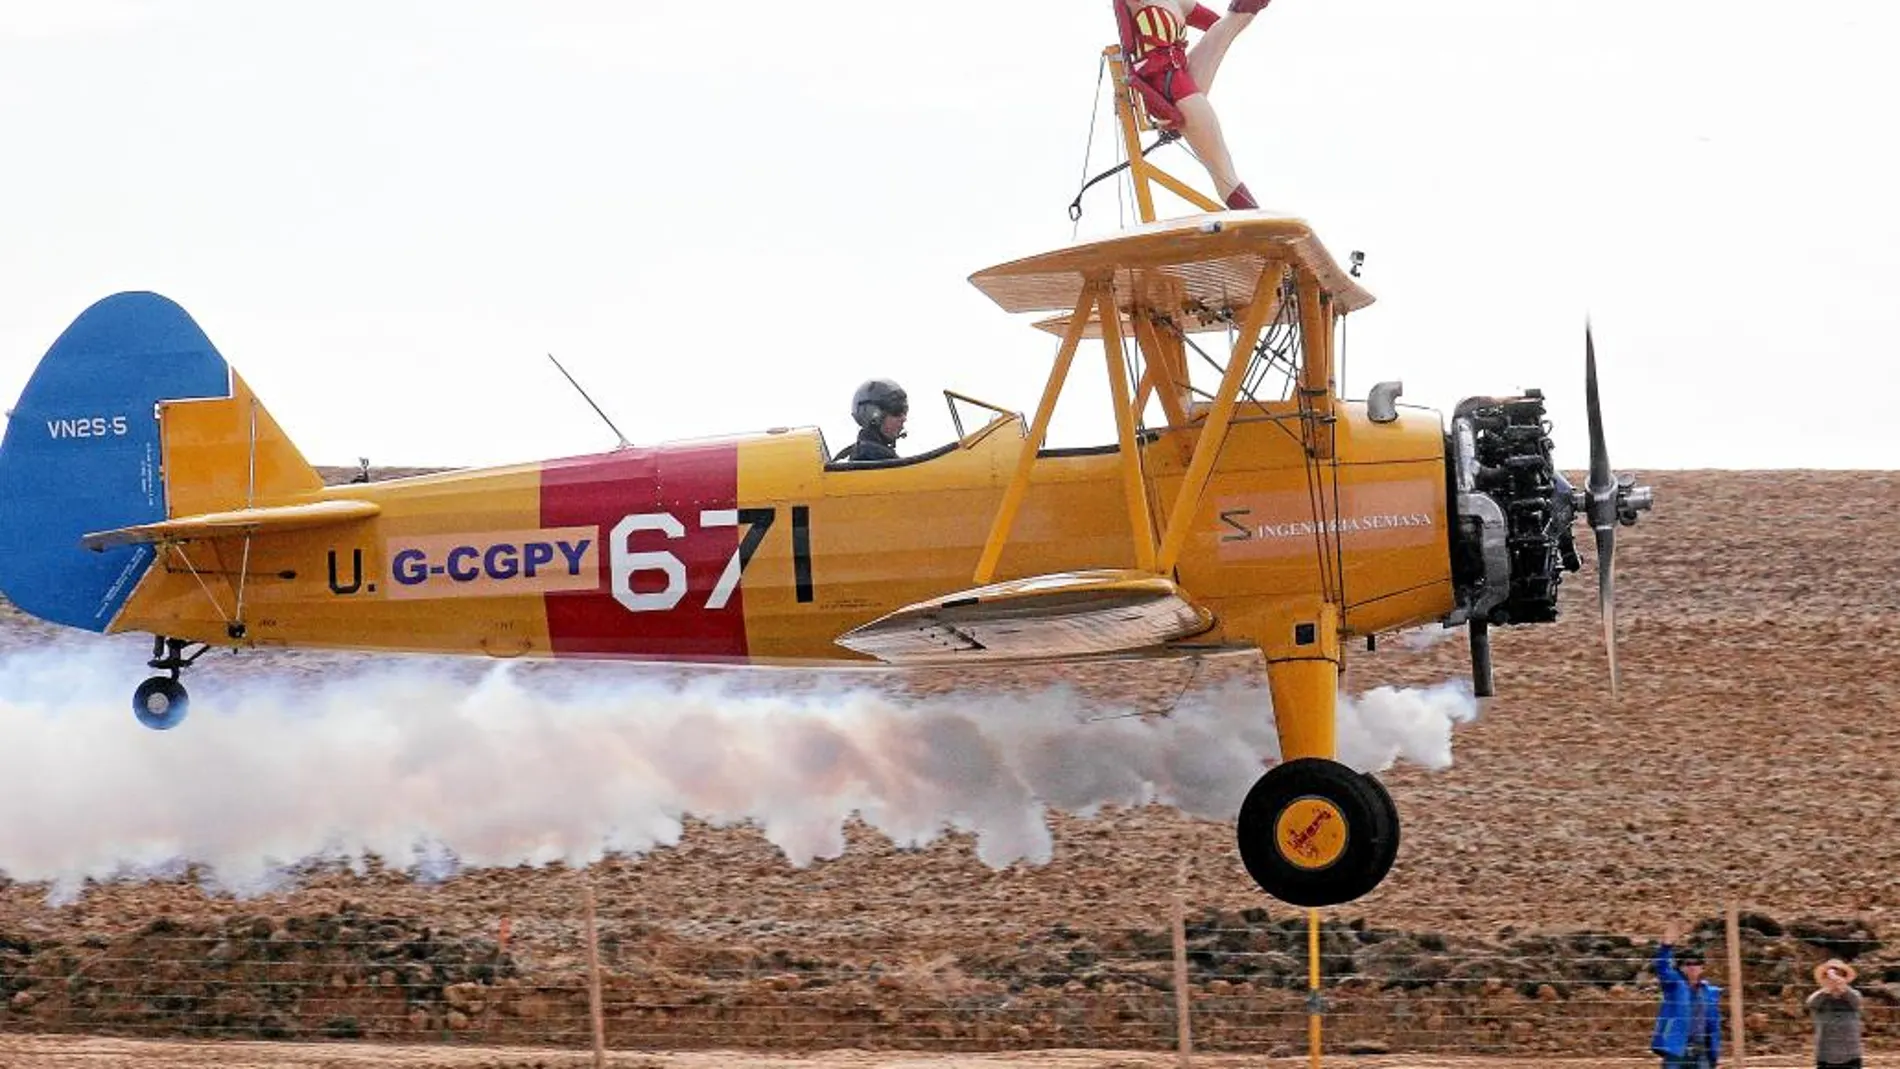 Exhibición aérea en el nuevo recinto leonés de Pajares de Oteros